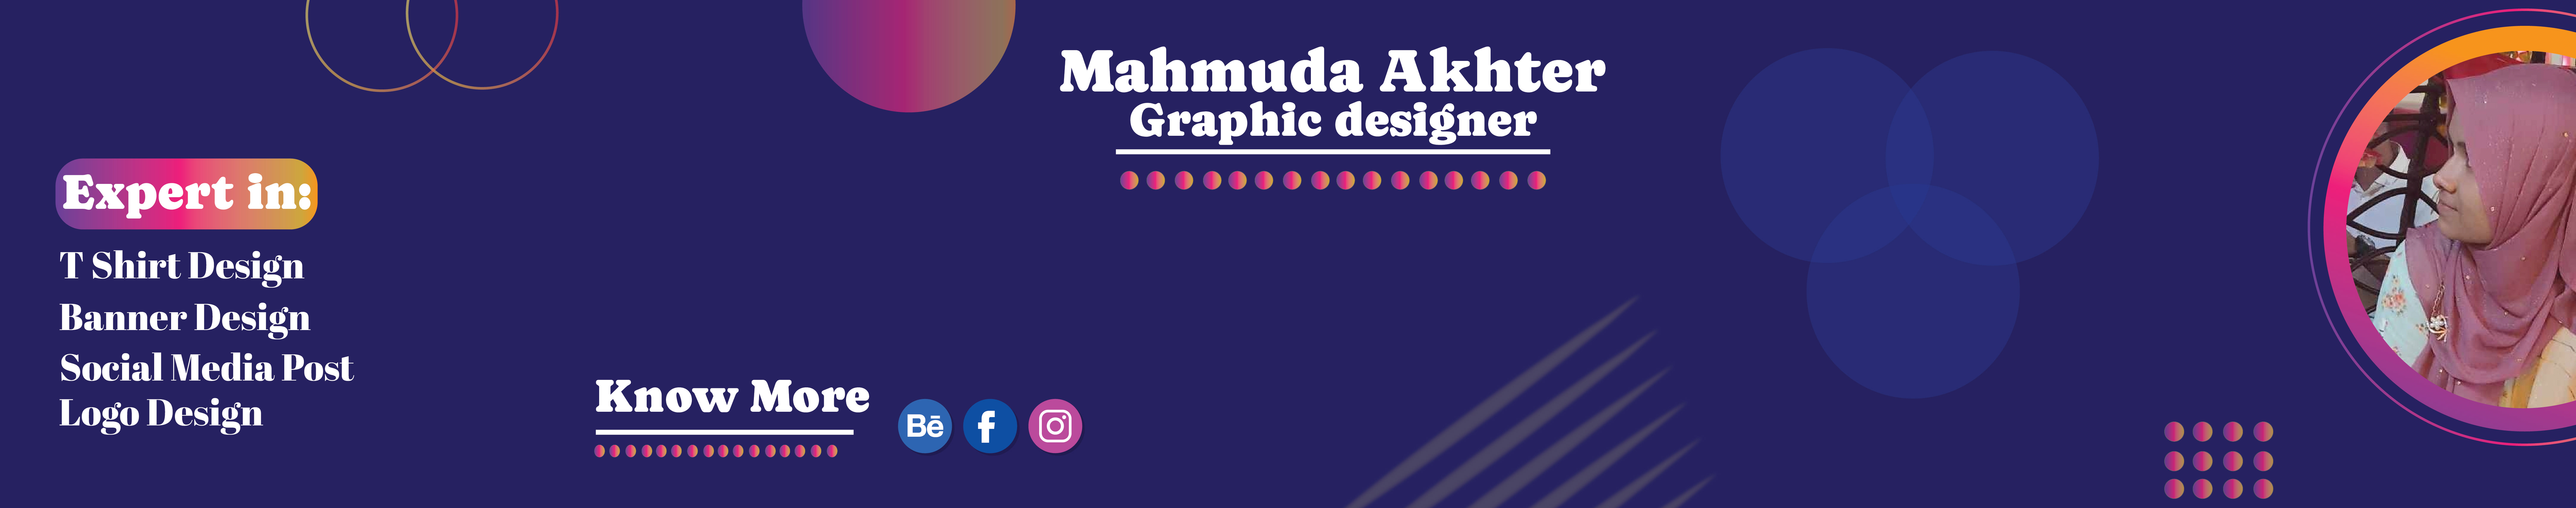 Banner de perfil de Mahmuda Akhter